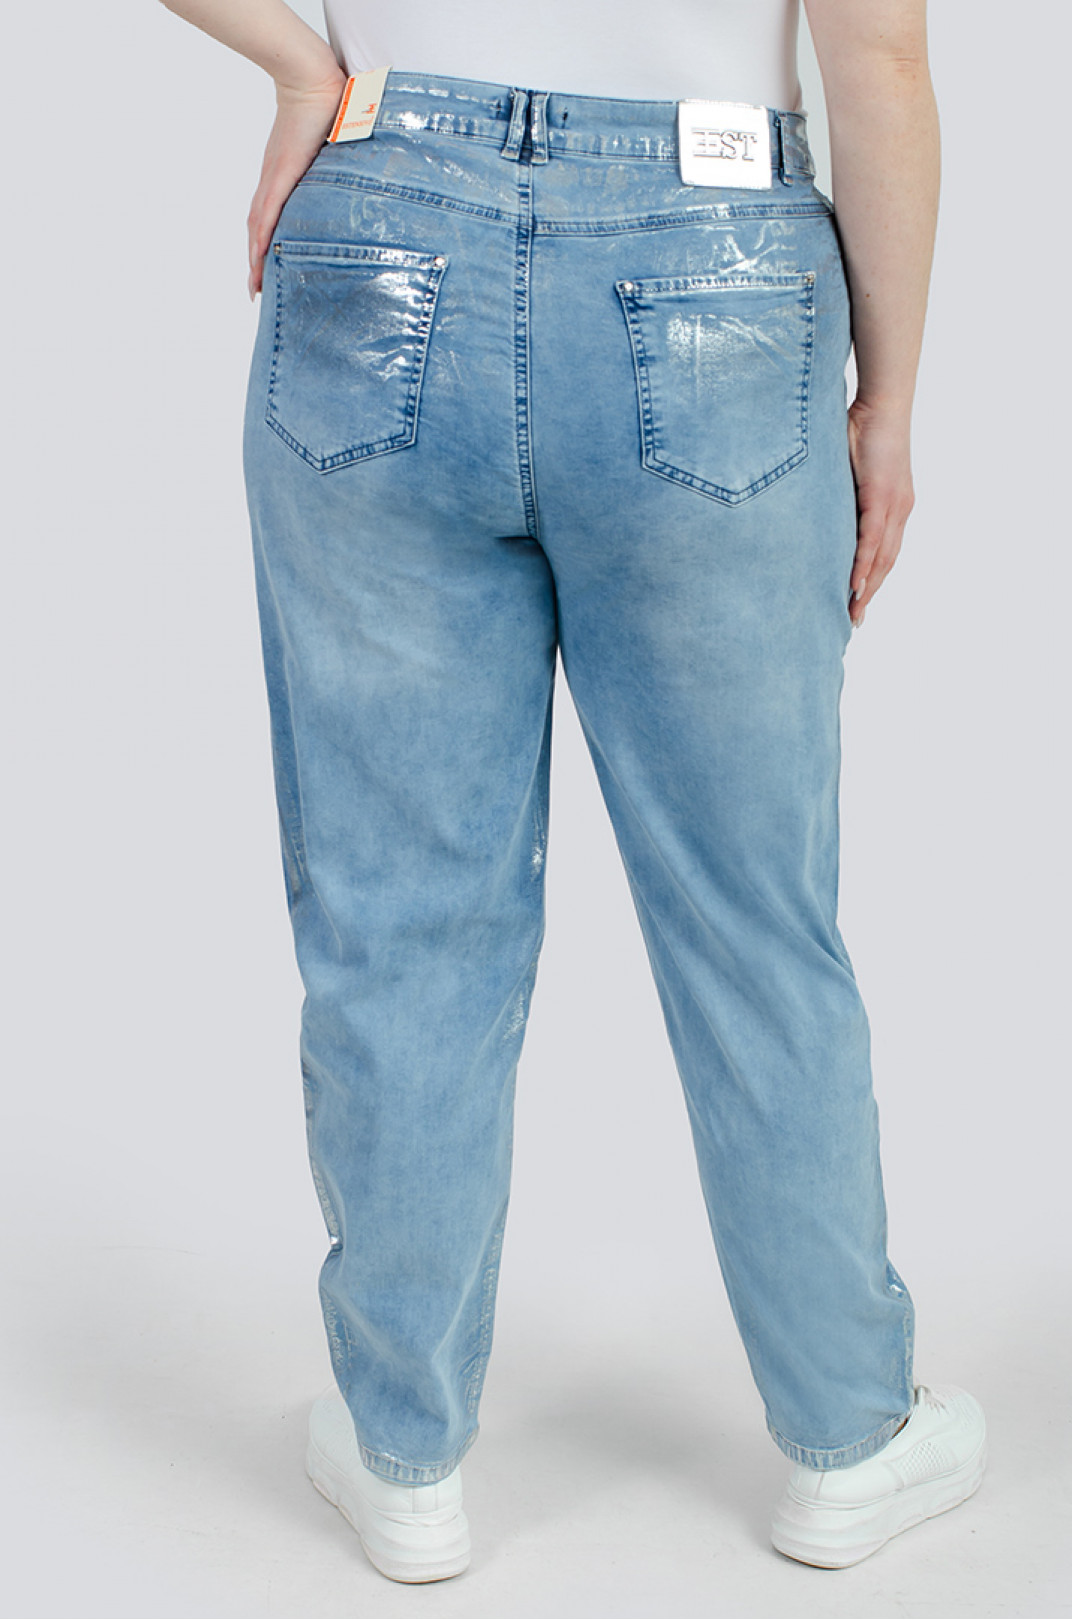 Трендові джинси зі сріблом великих розмірів